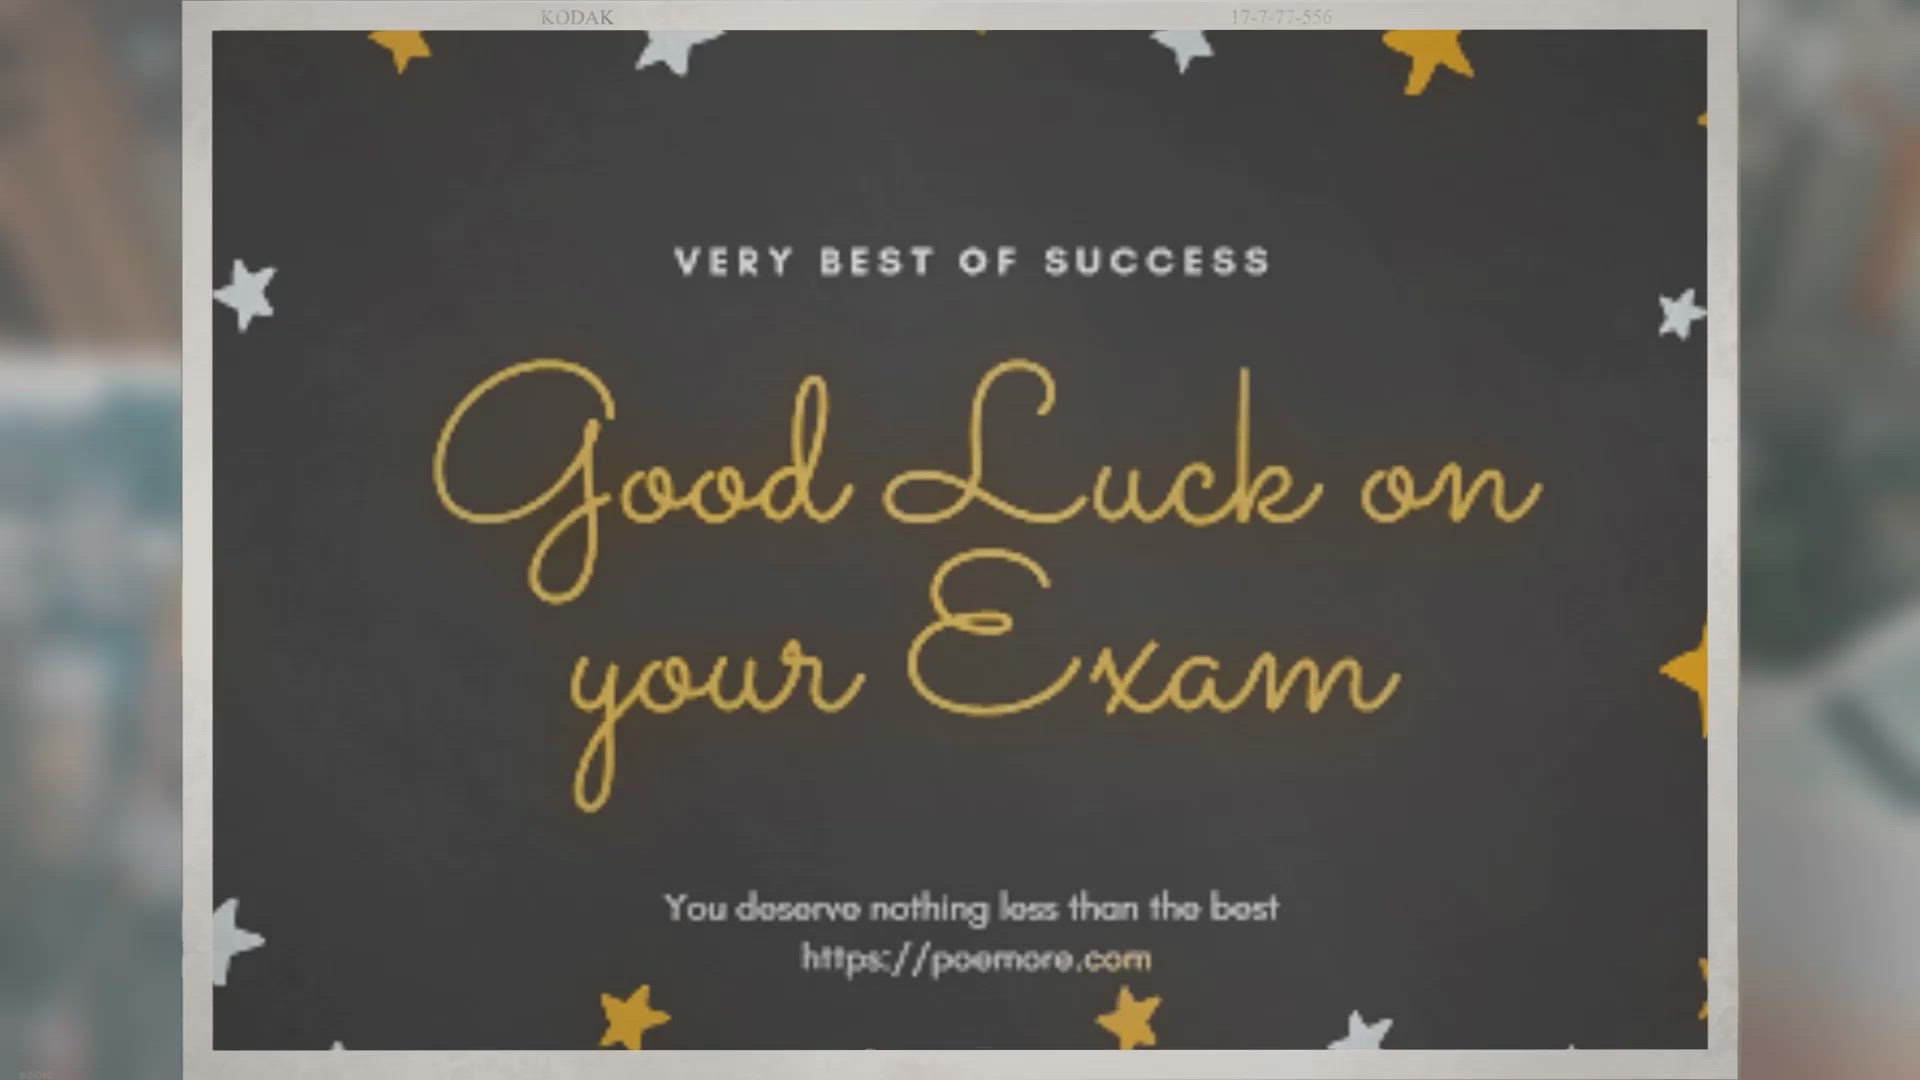 good luck for final exam wallpaper